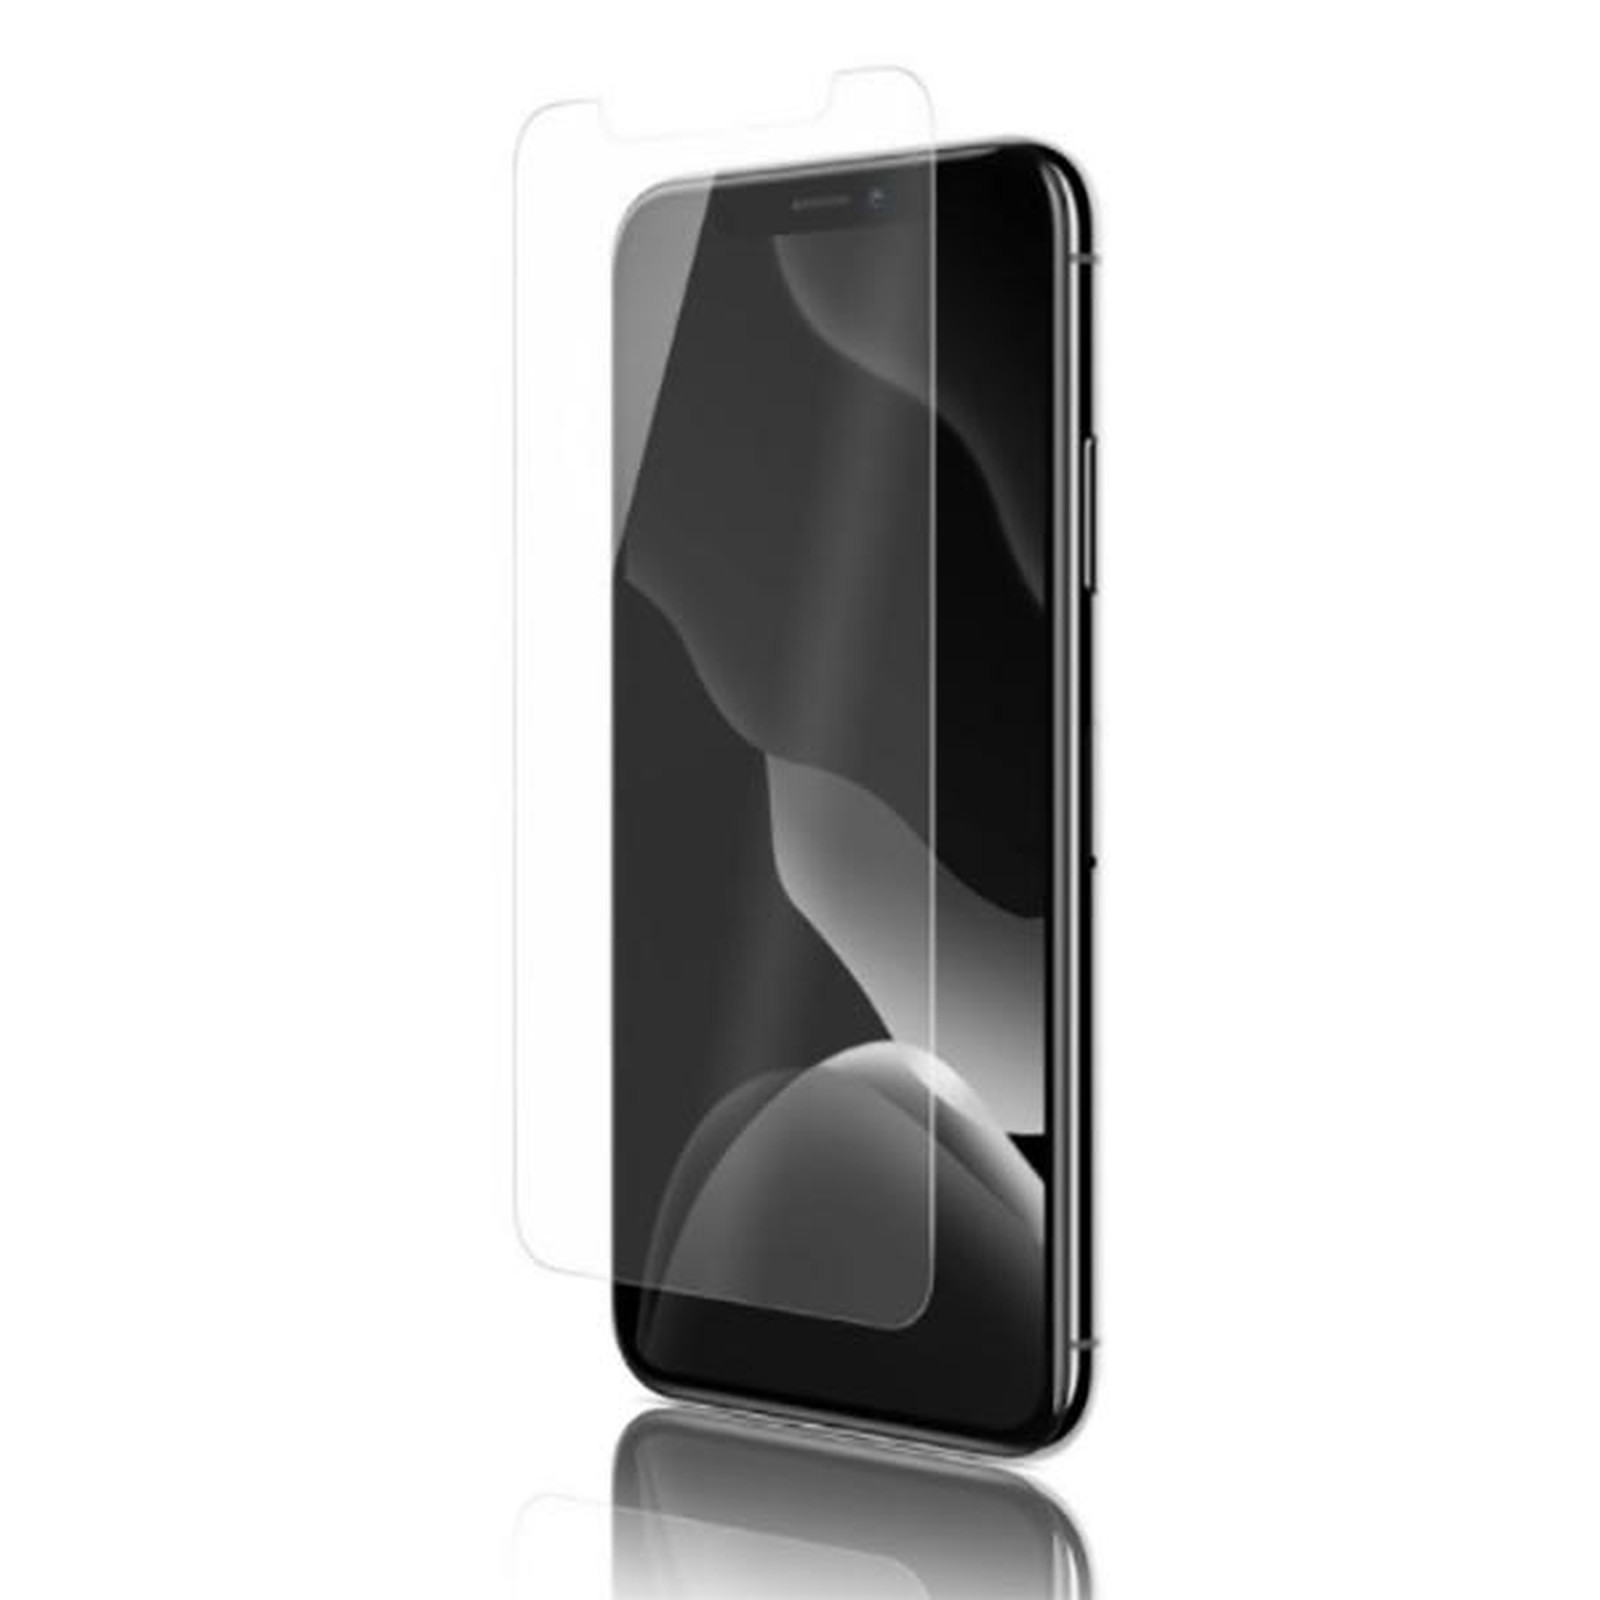 QDOS OptiGuard Glass Protect pour iPhone 11 et XR - clear - Protection ecran Qdos